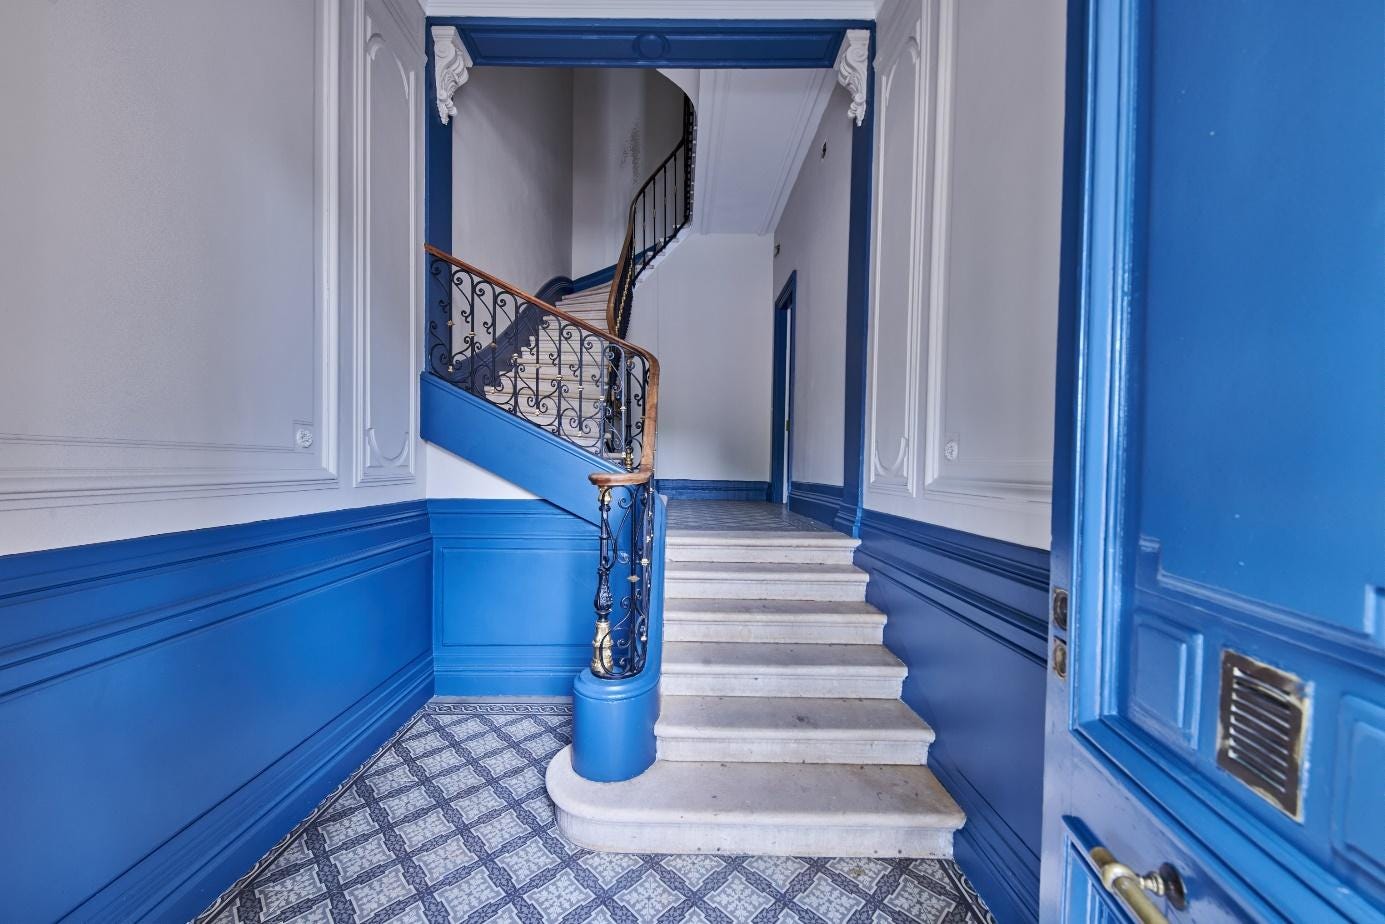 Une image contenant mur, escaliers, bleu, intérieur

Description générée automatiquement